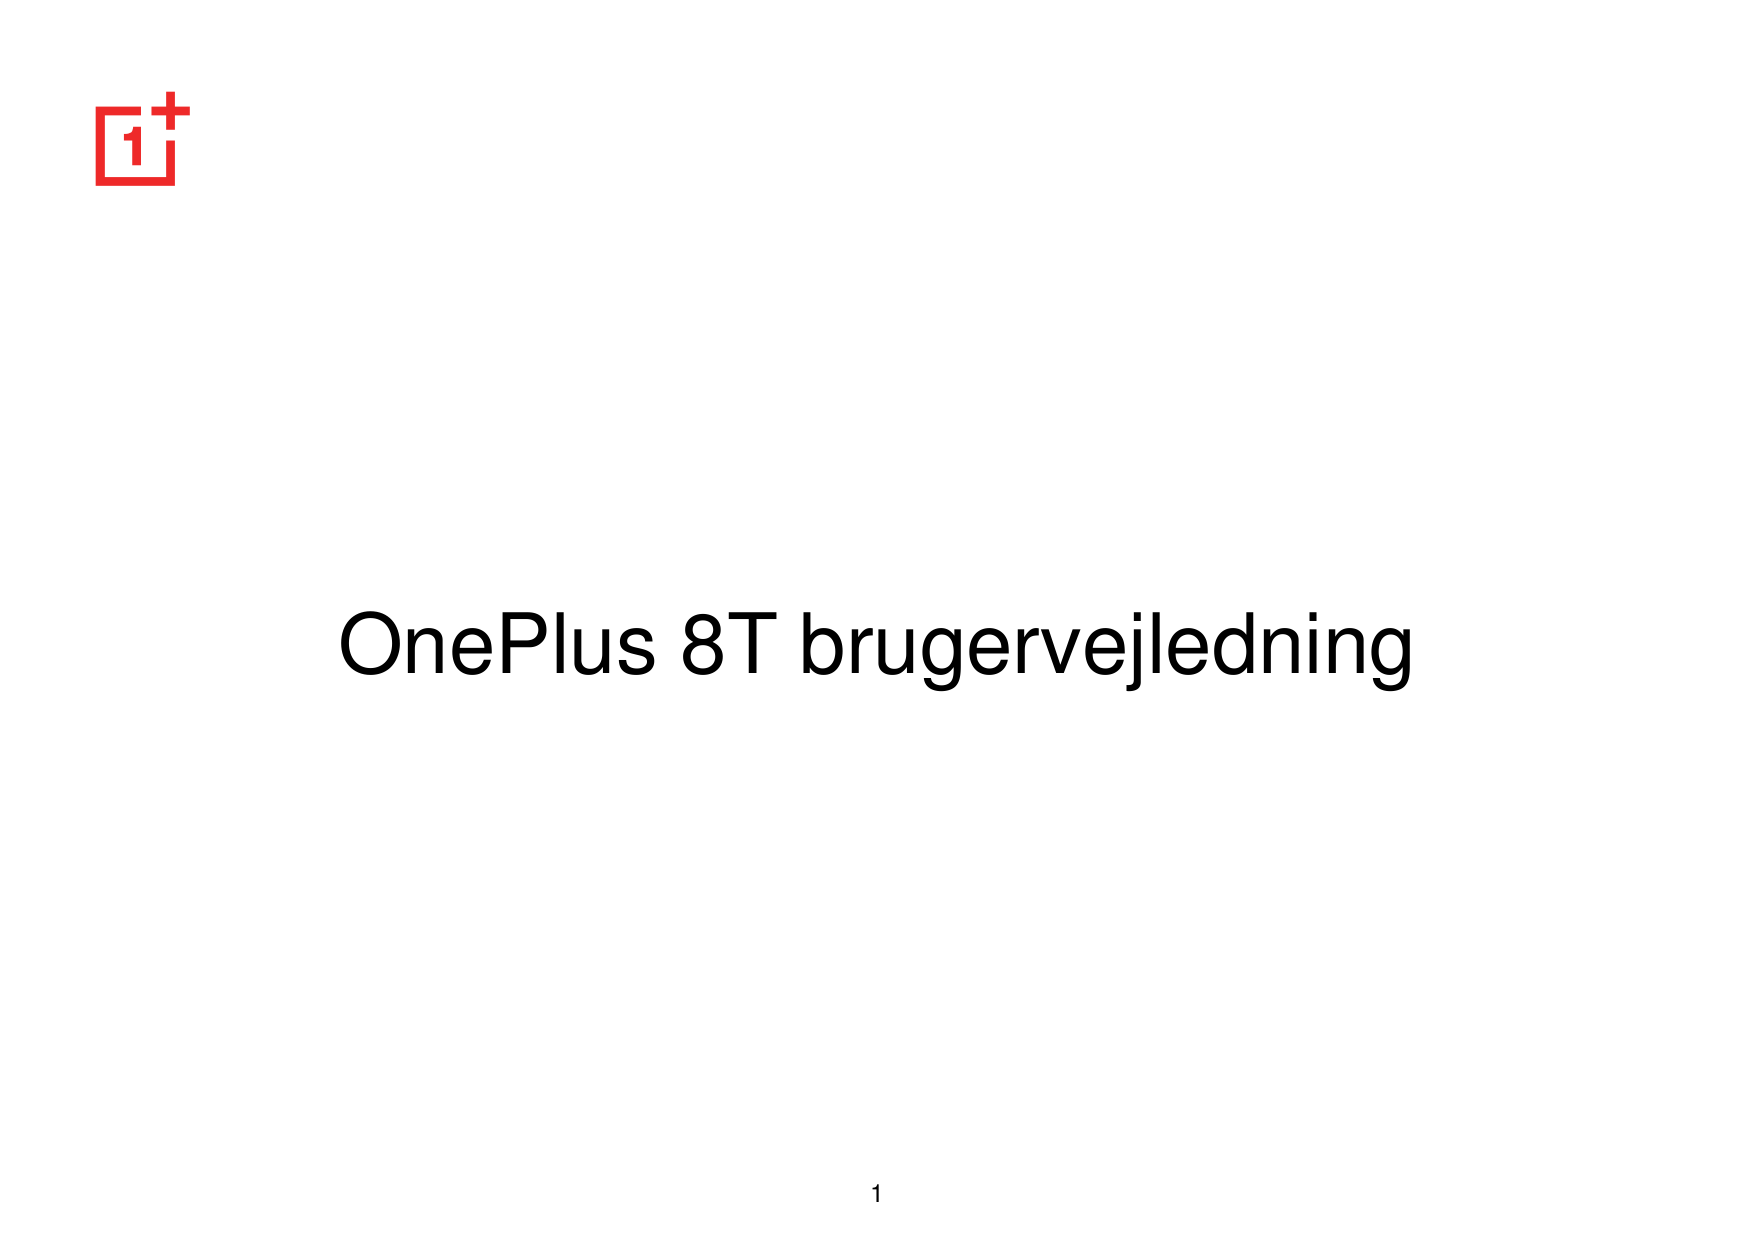 OnePlus 8T brugervejledning1